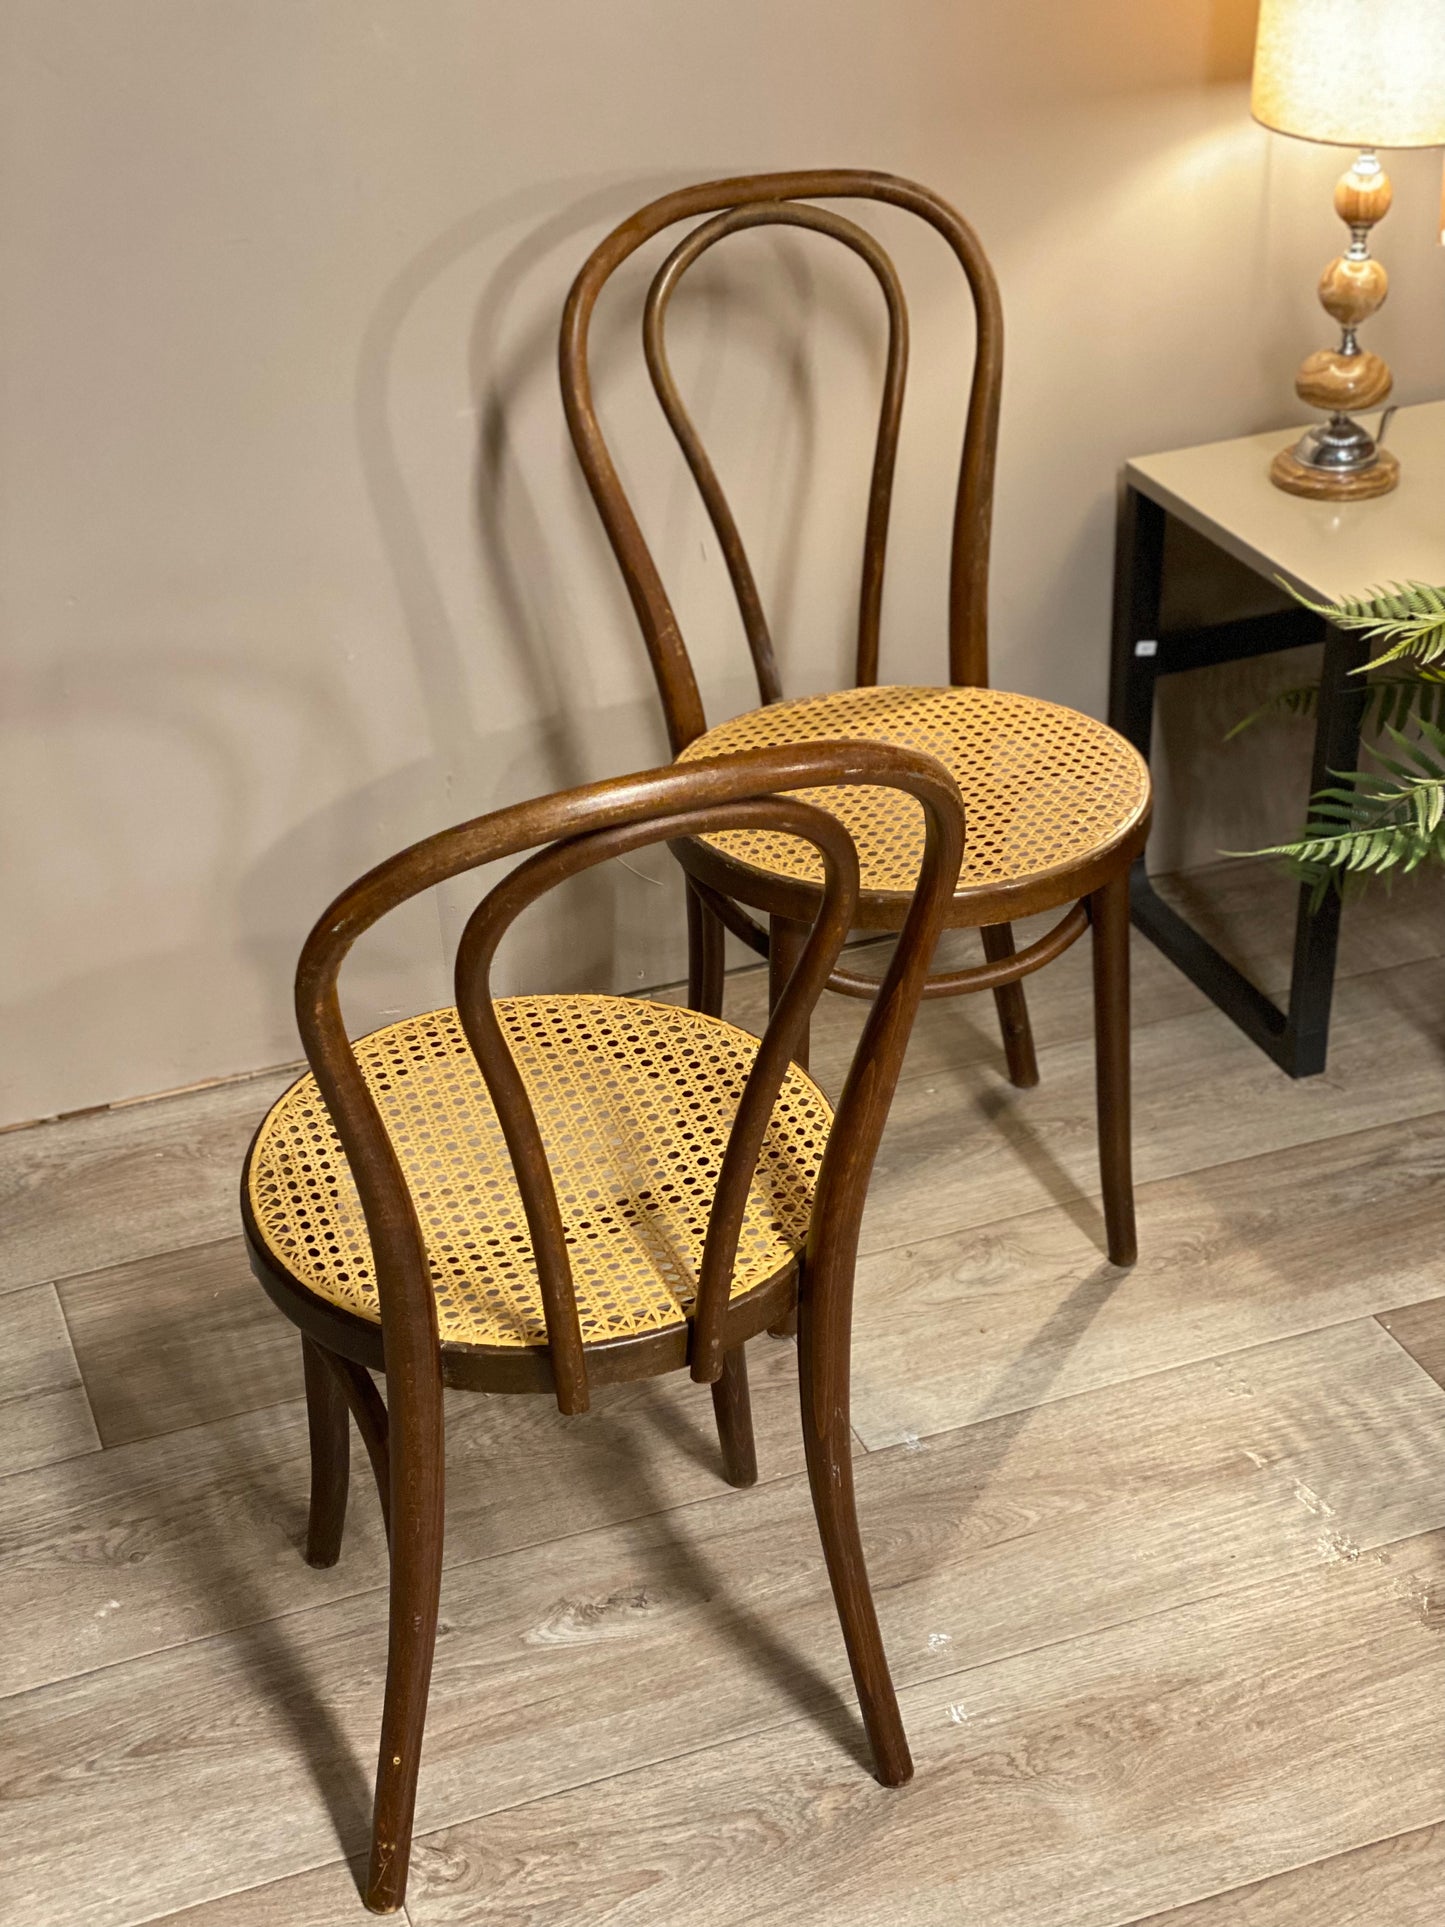 Originale vintage Thonet 18 stoler - Kvalitetsbrukt Møbel fra Hjembruket på Hjembruket